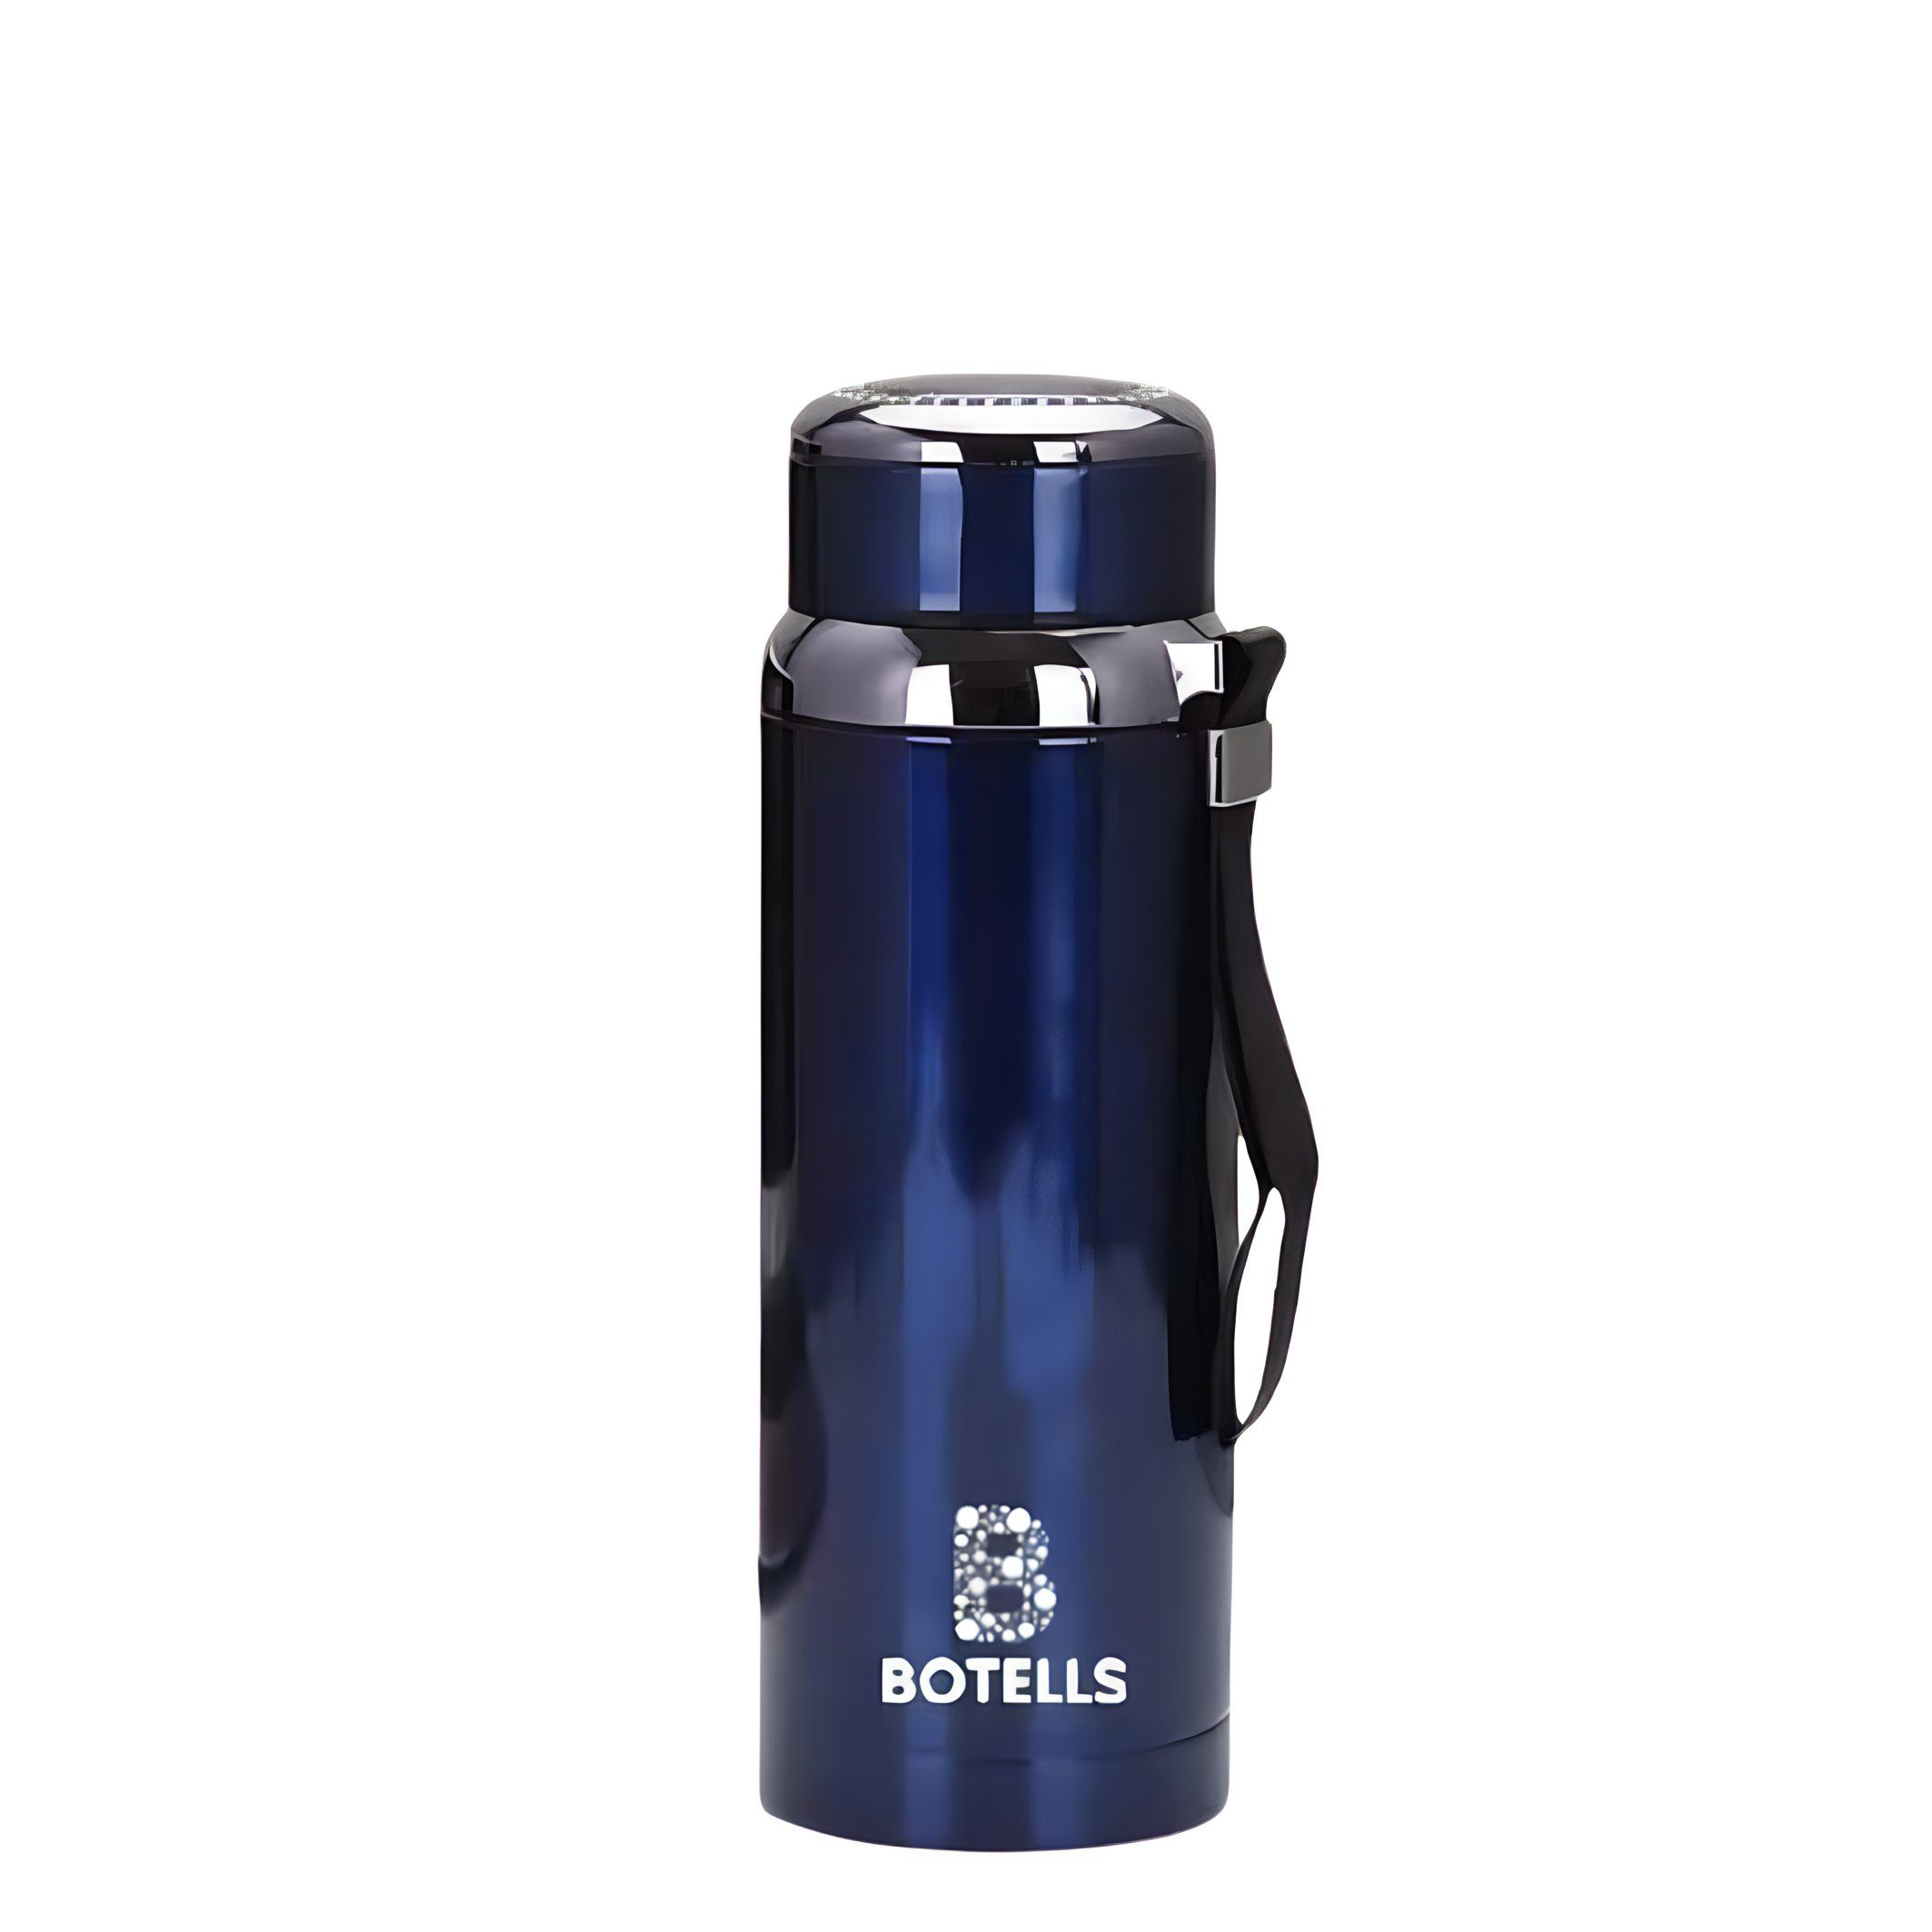 Botells Thermoflasche Thermo Kanne, Isoflasche Edelstahl 0,8 L Tee Kaffee Metallic-Design, lebensmittelechter Edelstahl, rostfrei, auslaufsicher, doppelwandig Blau